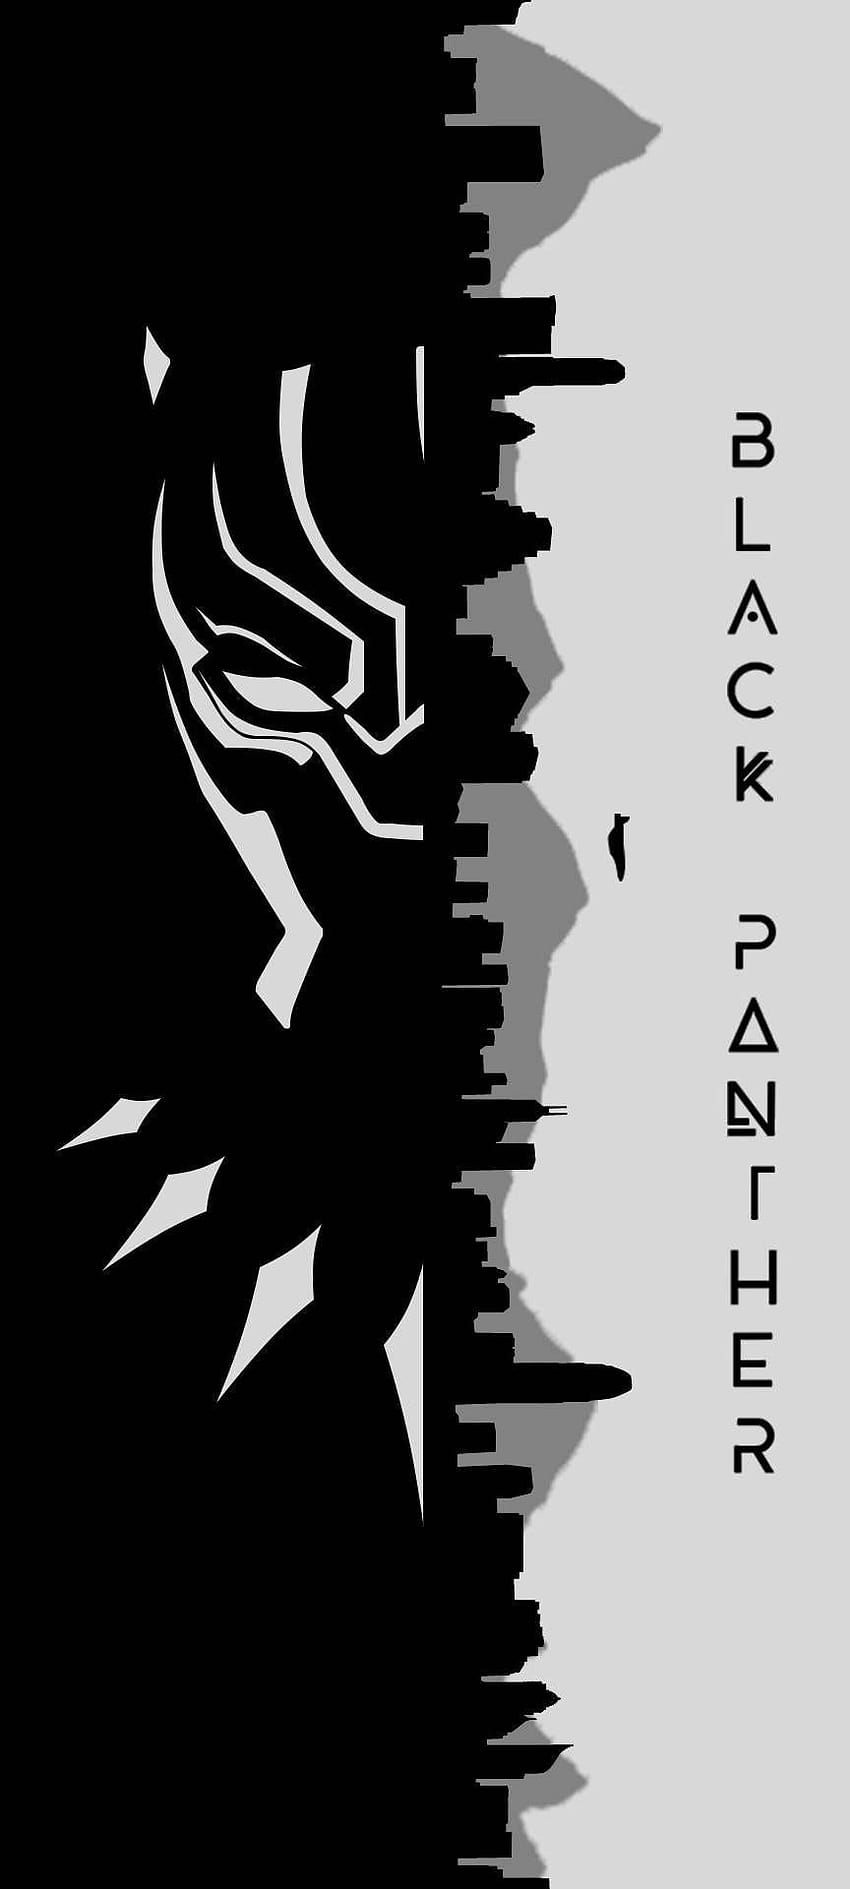 Panther hitam yang ramah dan obat bius, RIP King t'challa, rip black panther wallpaper ponsel HD